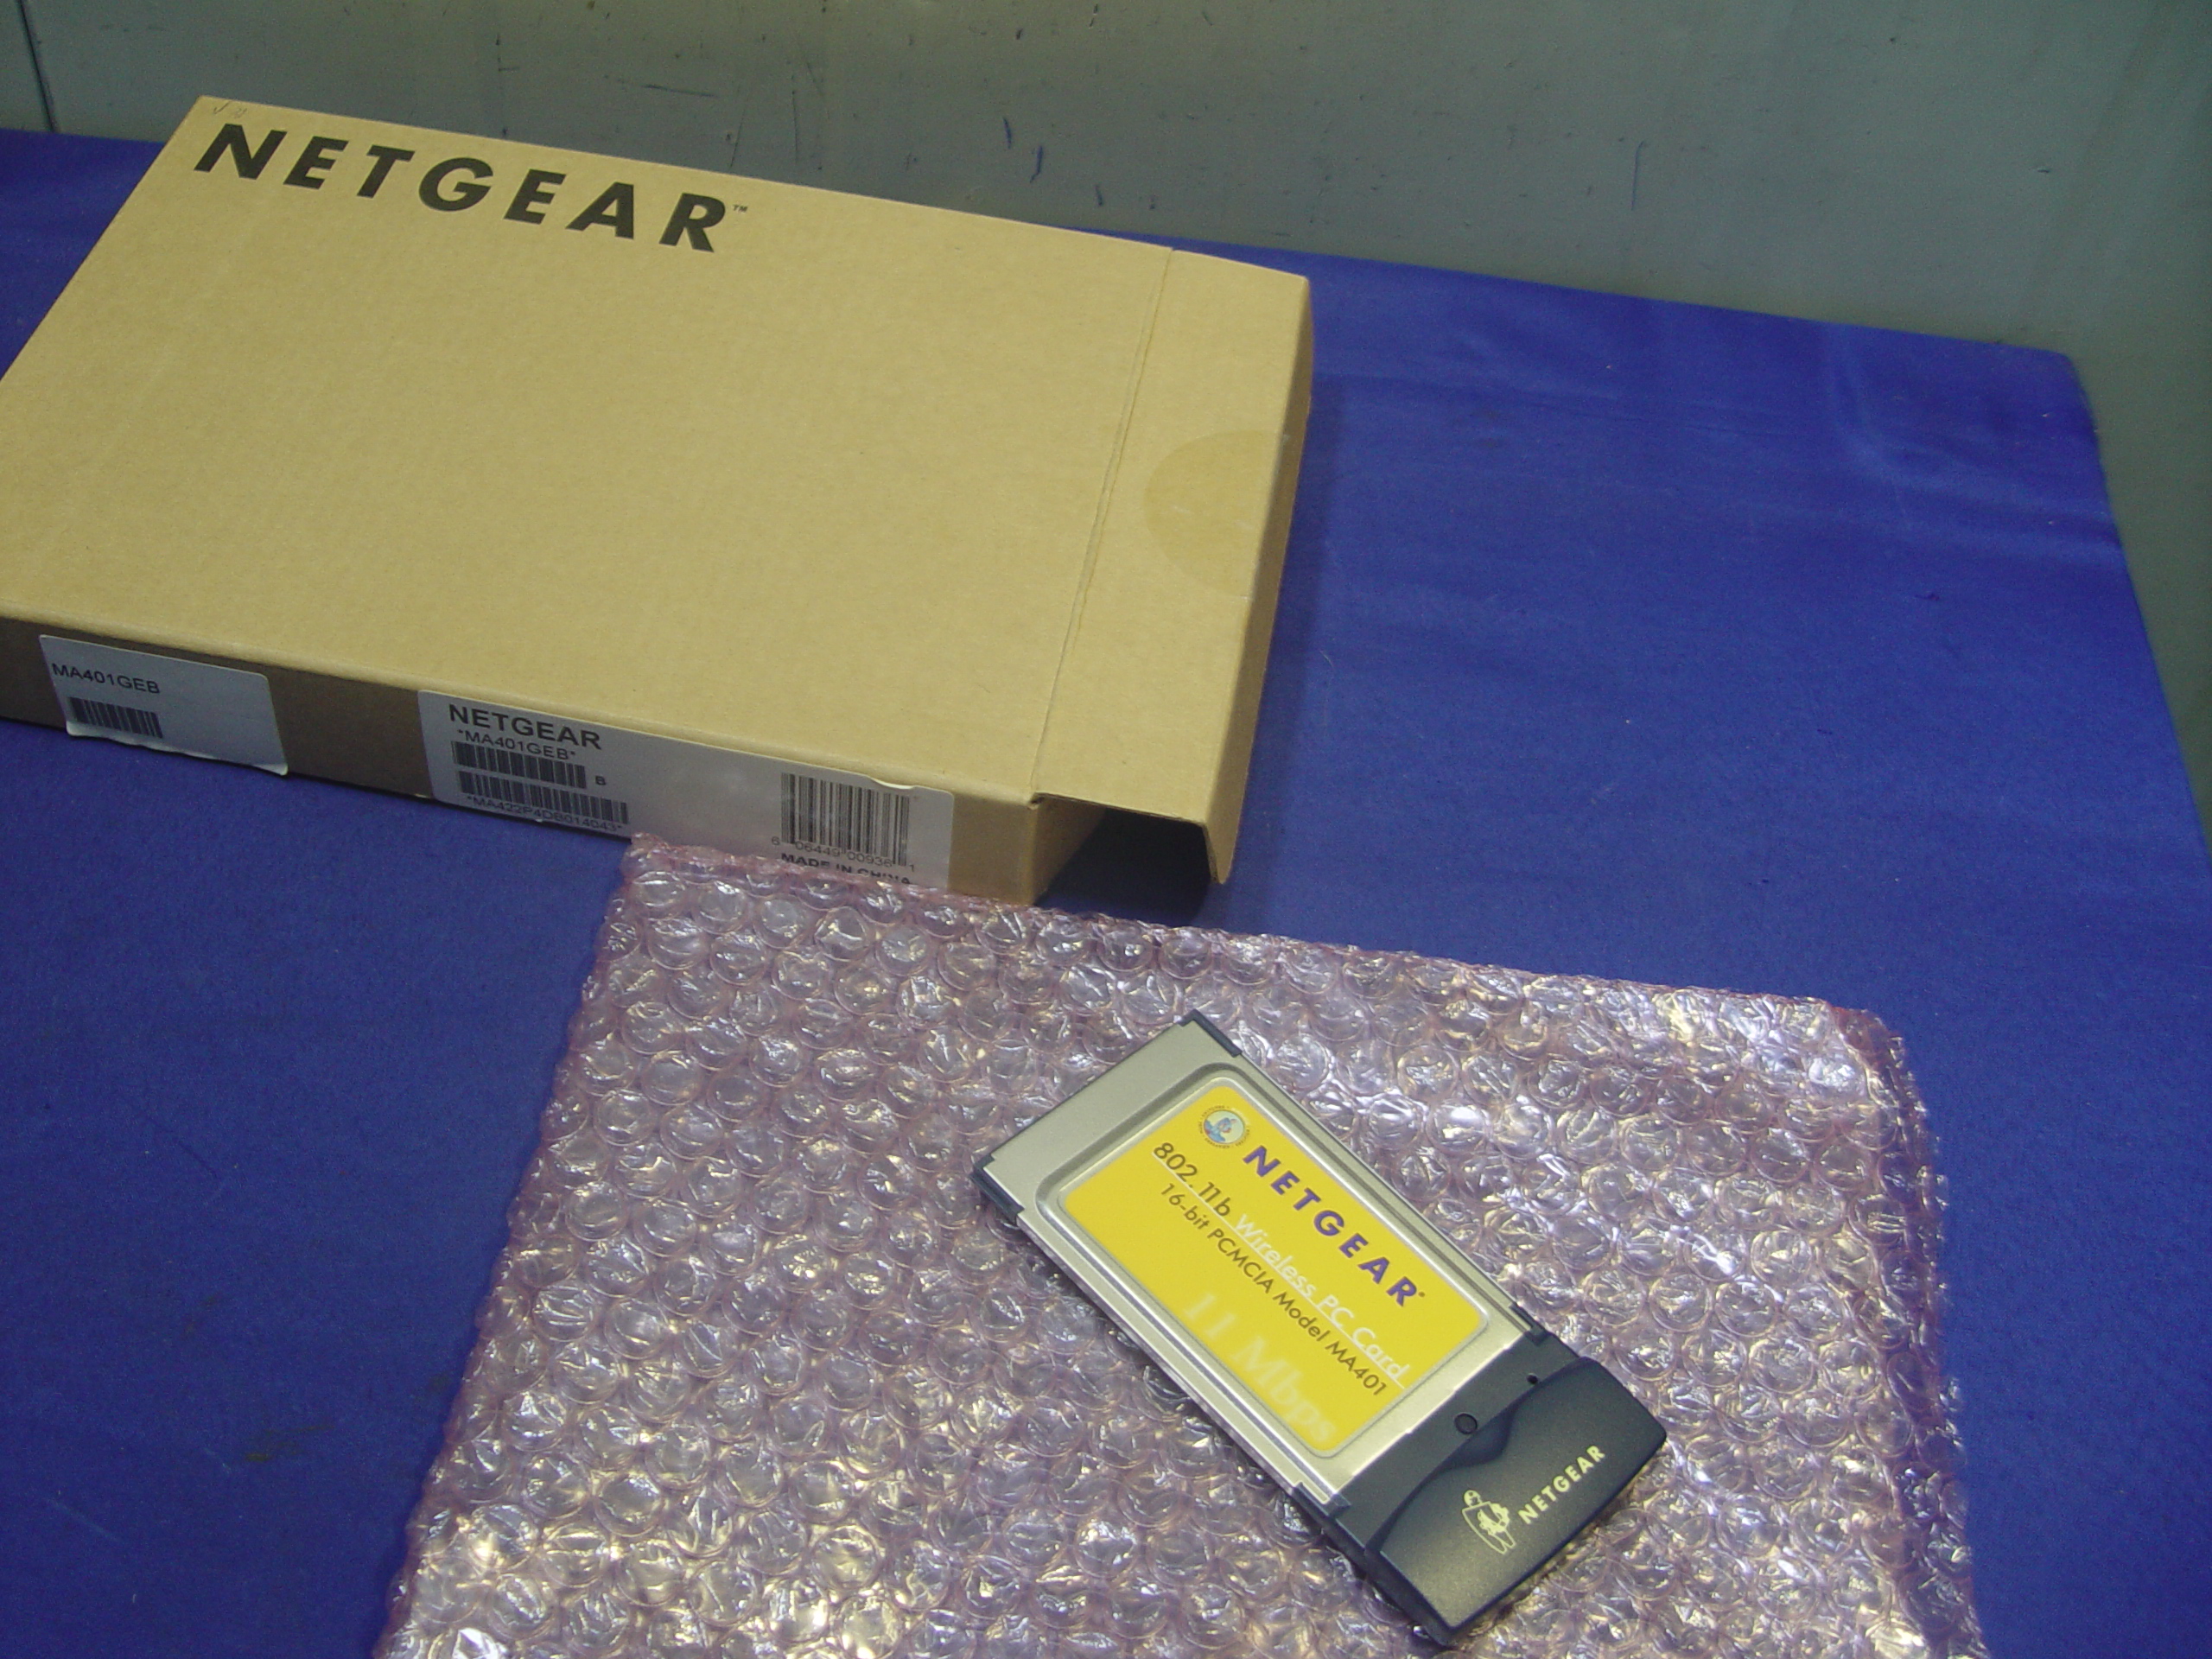 [A9182] NETGEAR 802.11b  Wireless PC Card PC 16-bit PCMCIA Model MA401